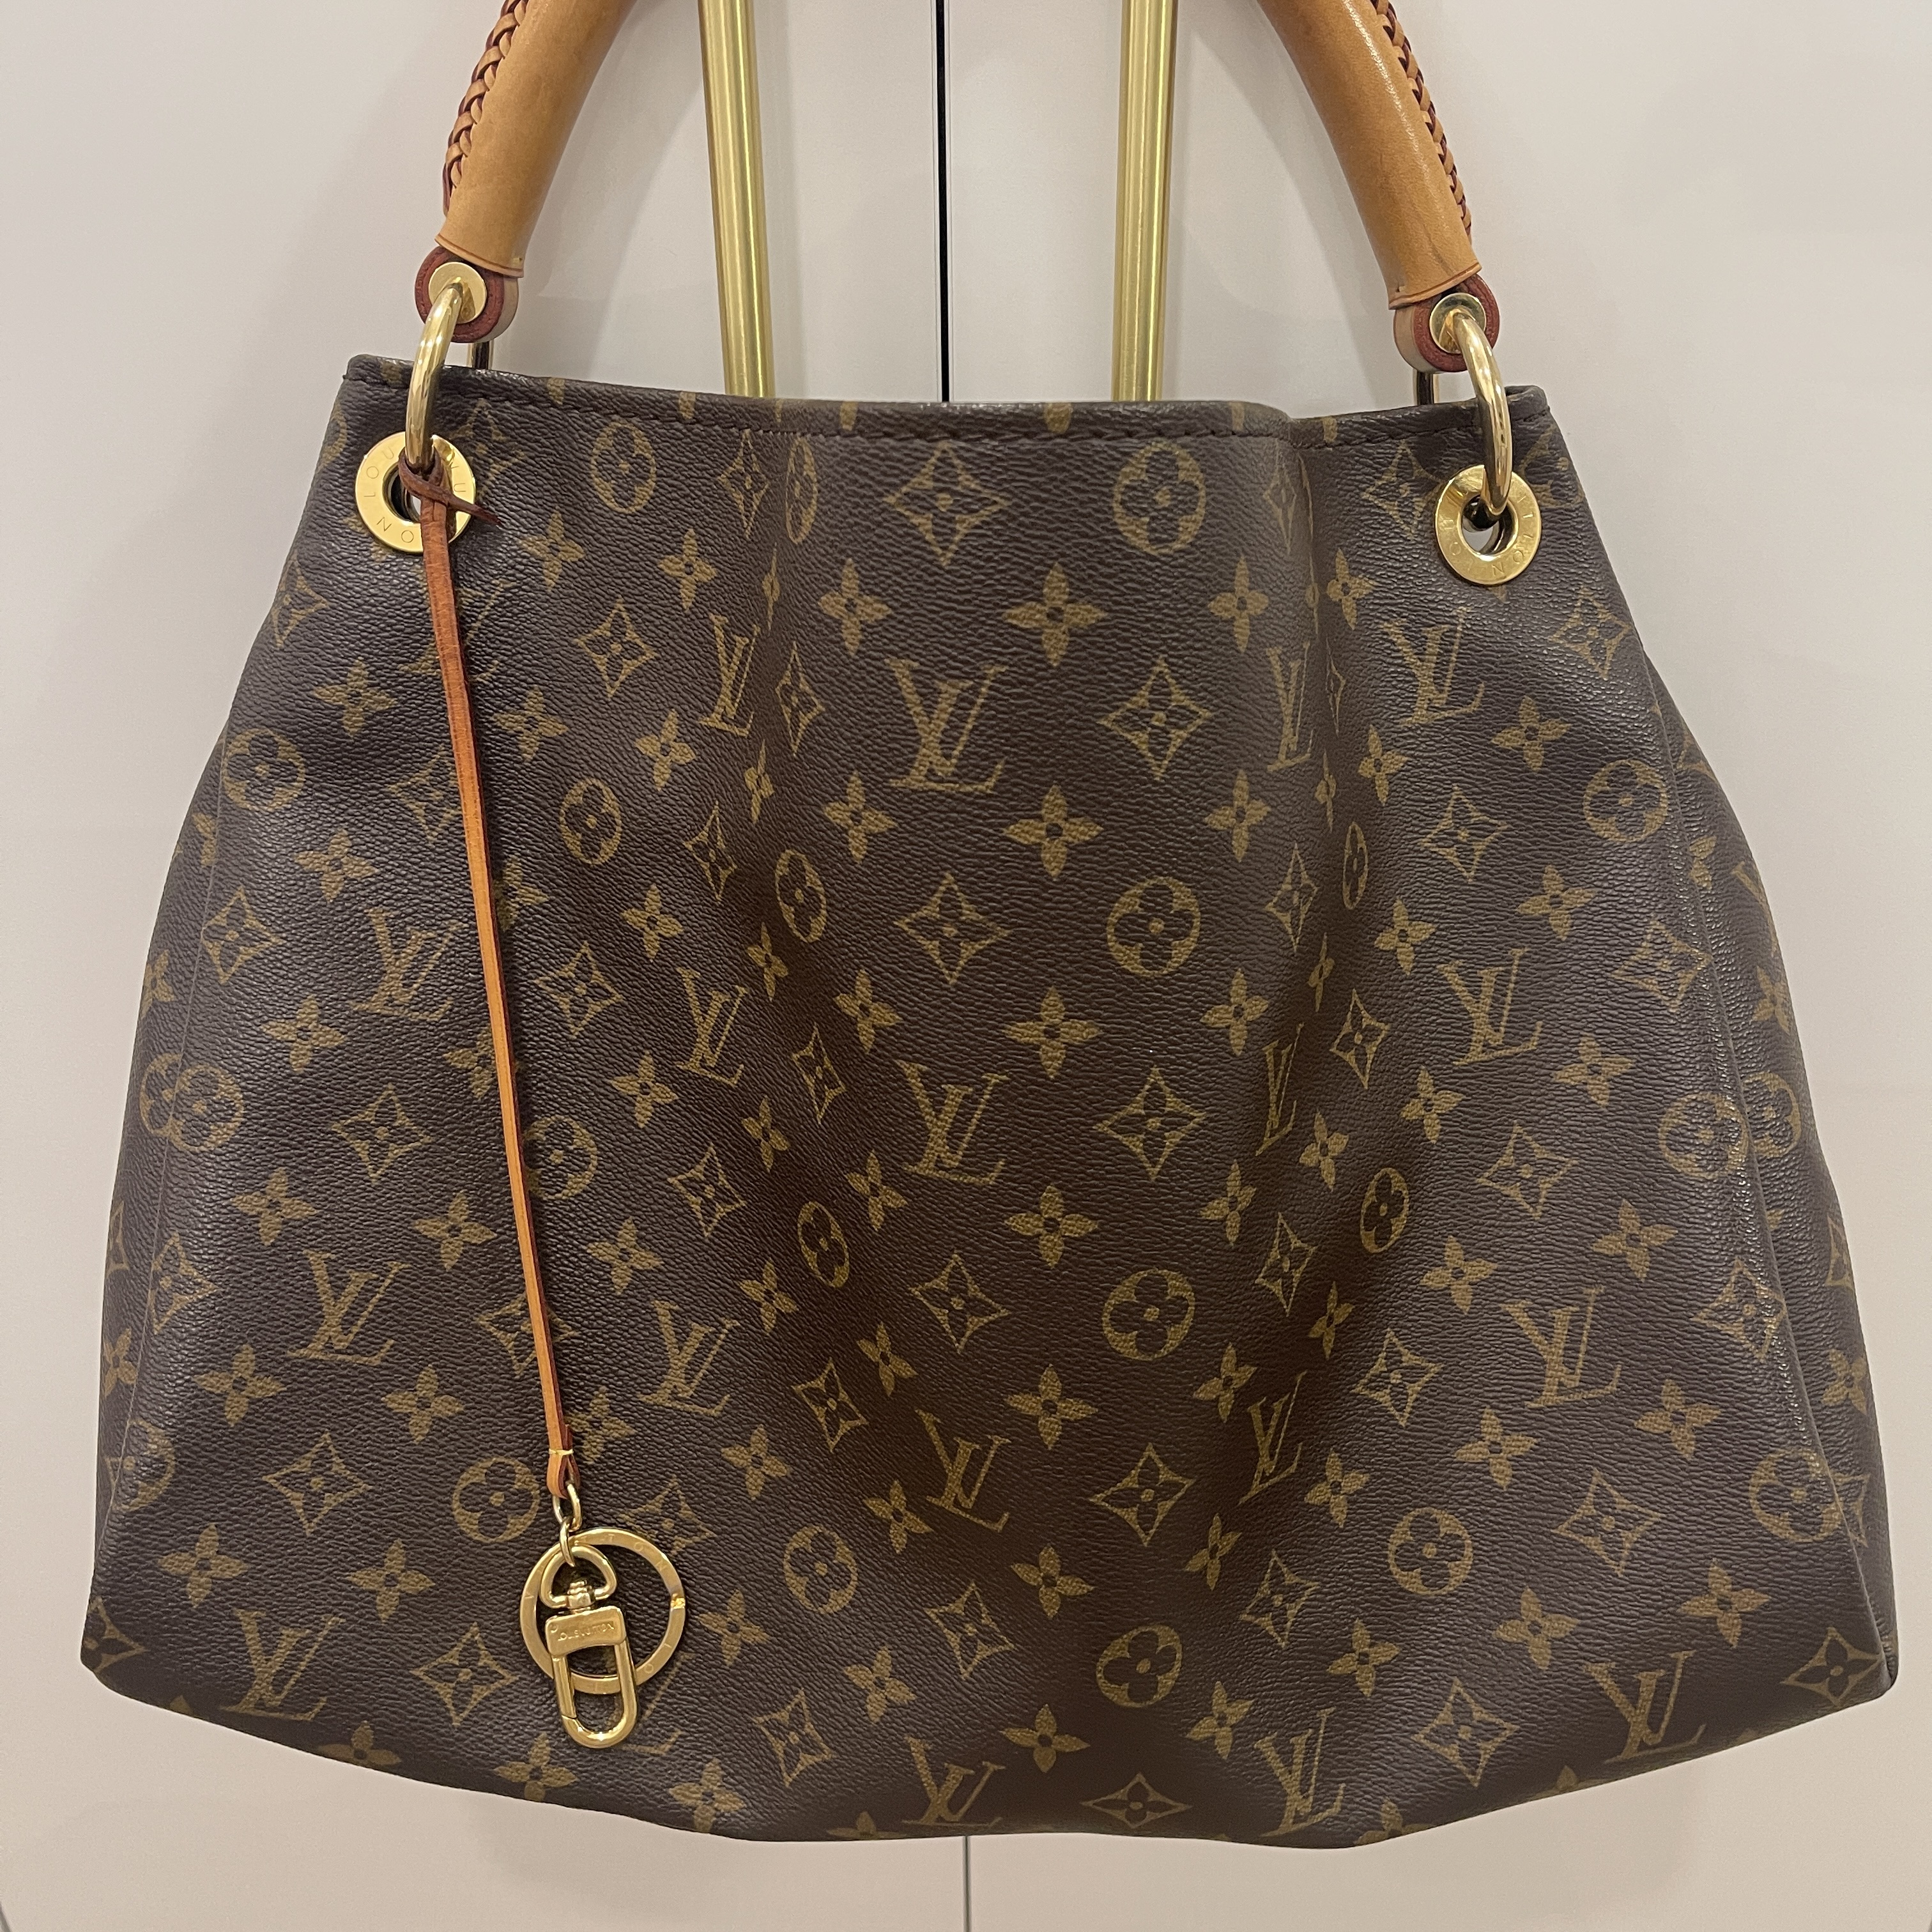 Louis Vuitton Artsy Handbag 390667